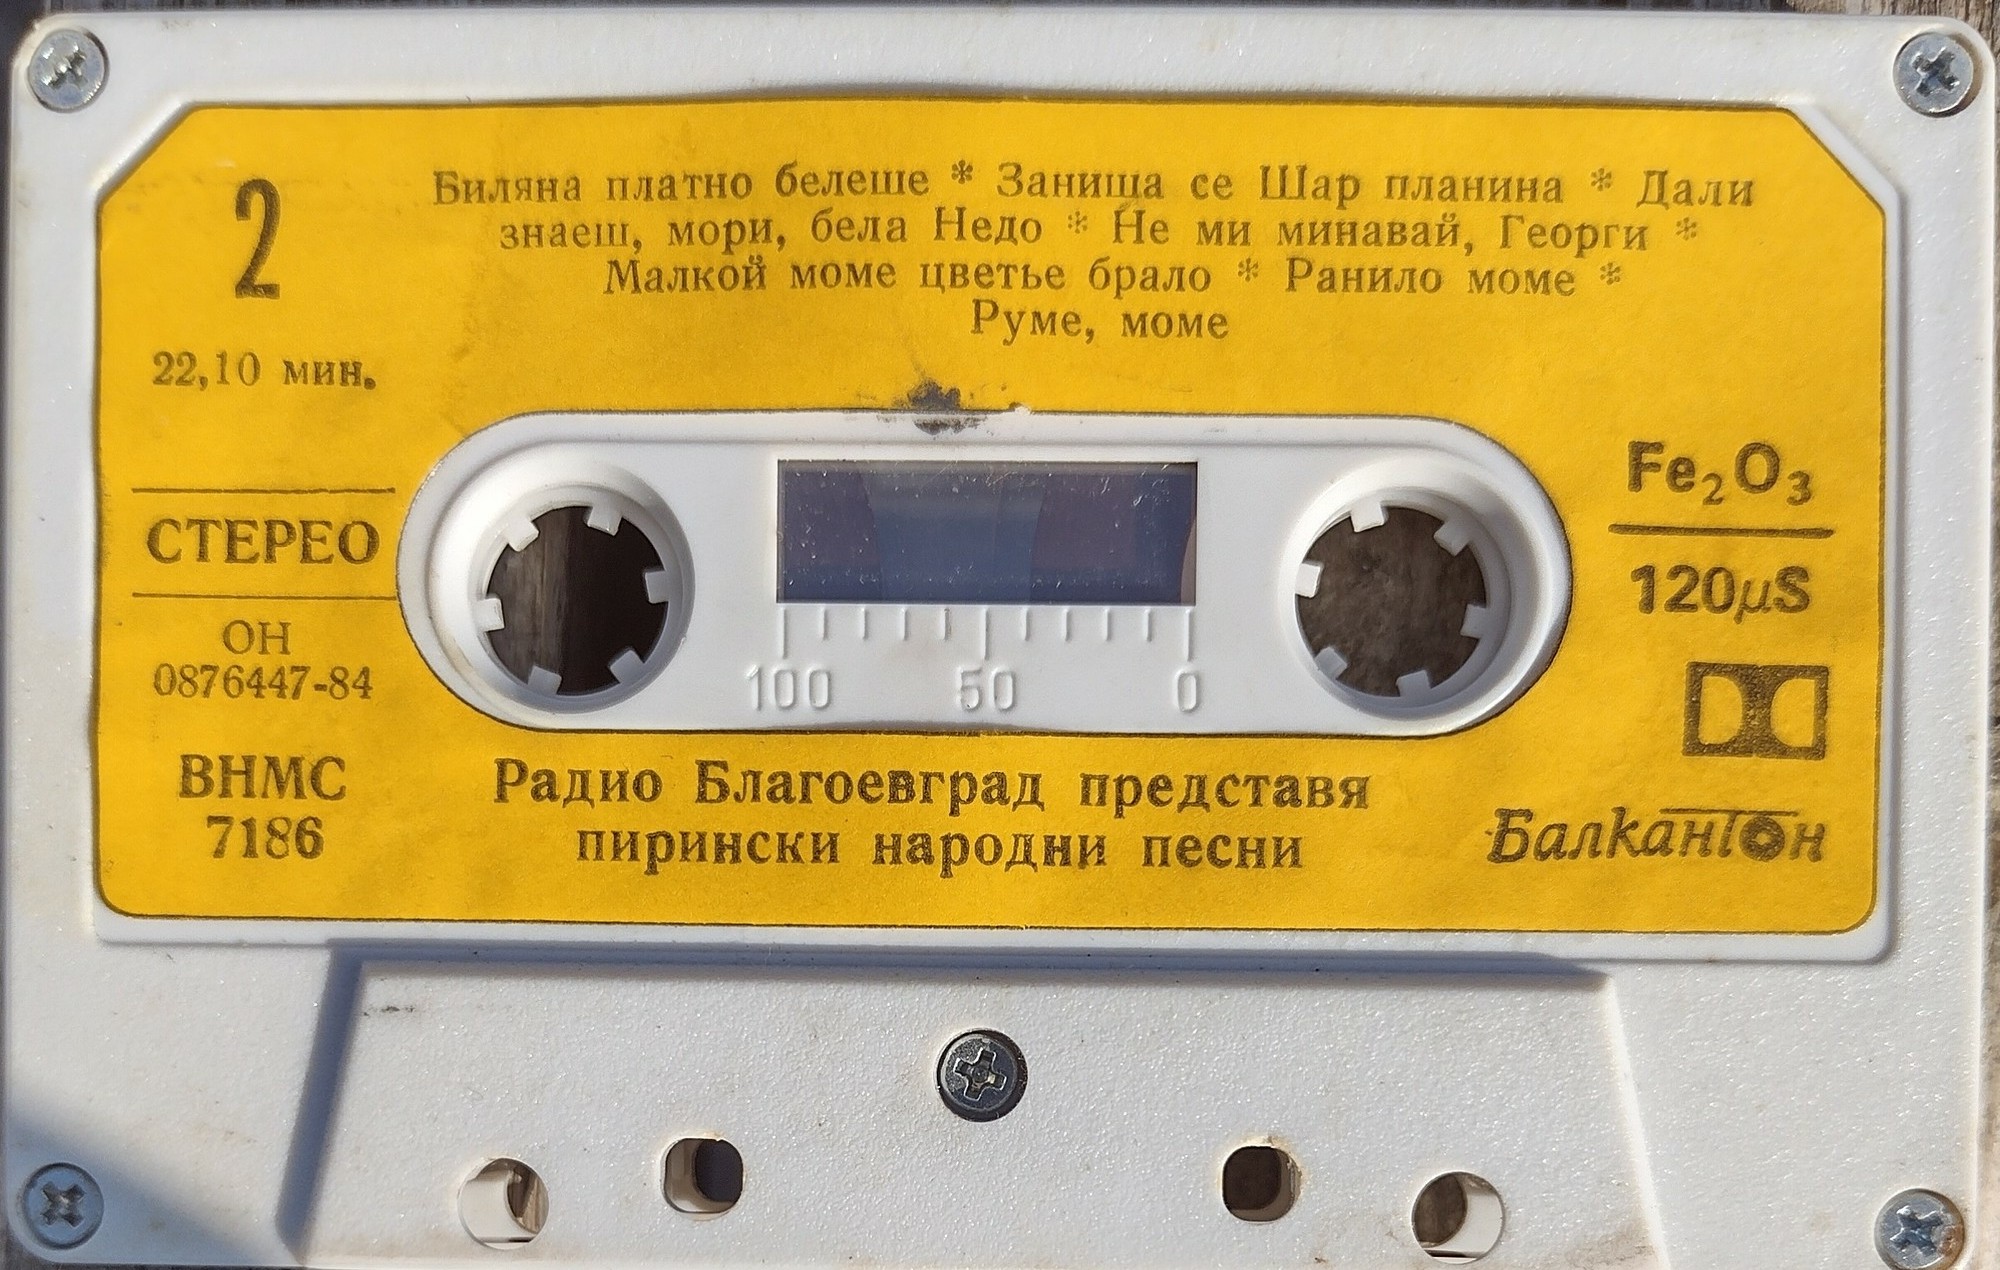 Радио Благоевград представя Пирински народни песни